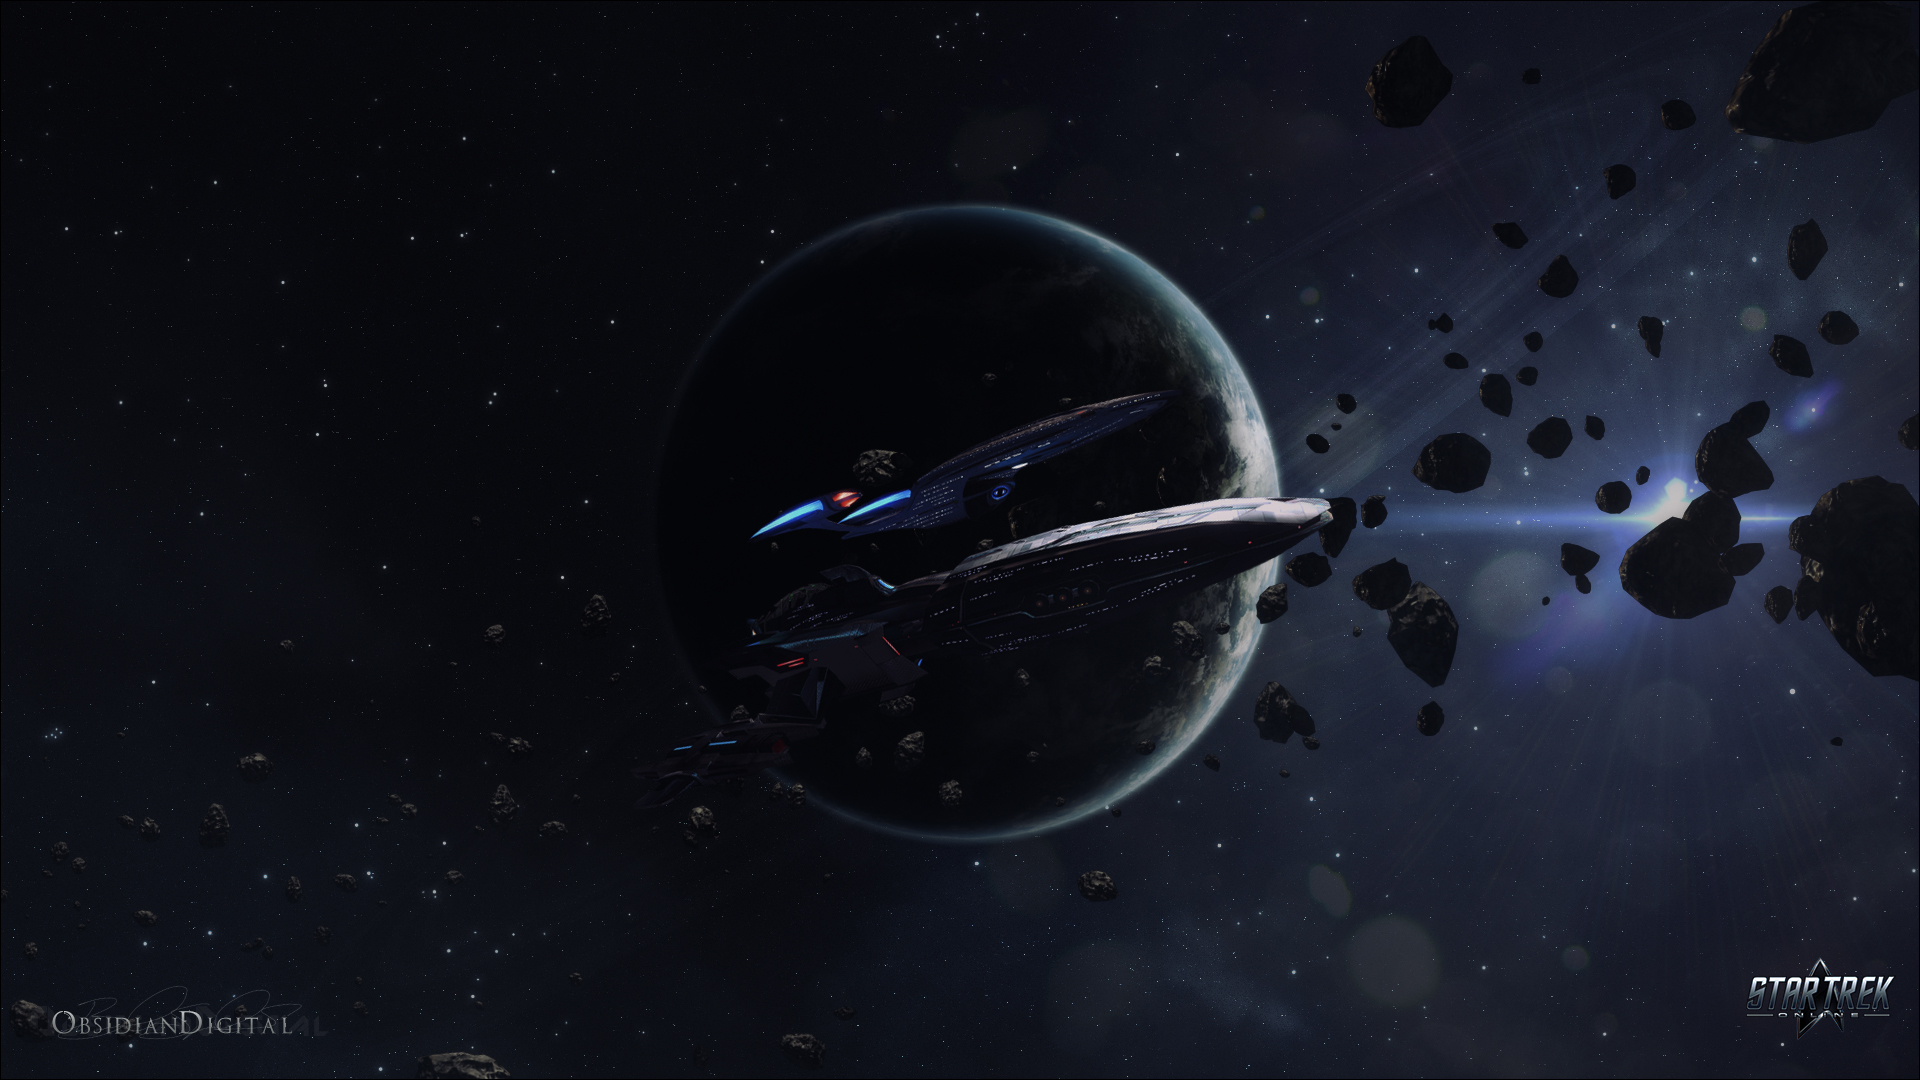 Star Trek Online Kumari Escort Wallpaper 1080p By Obsidiandigital On